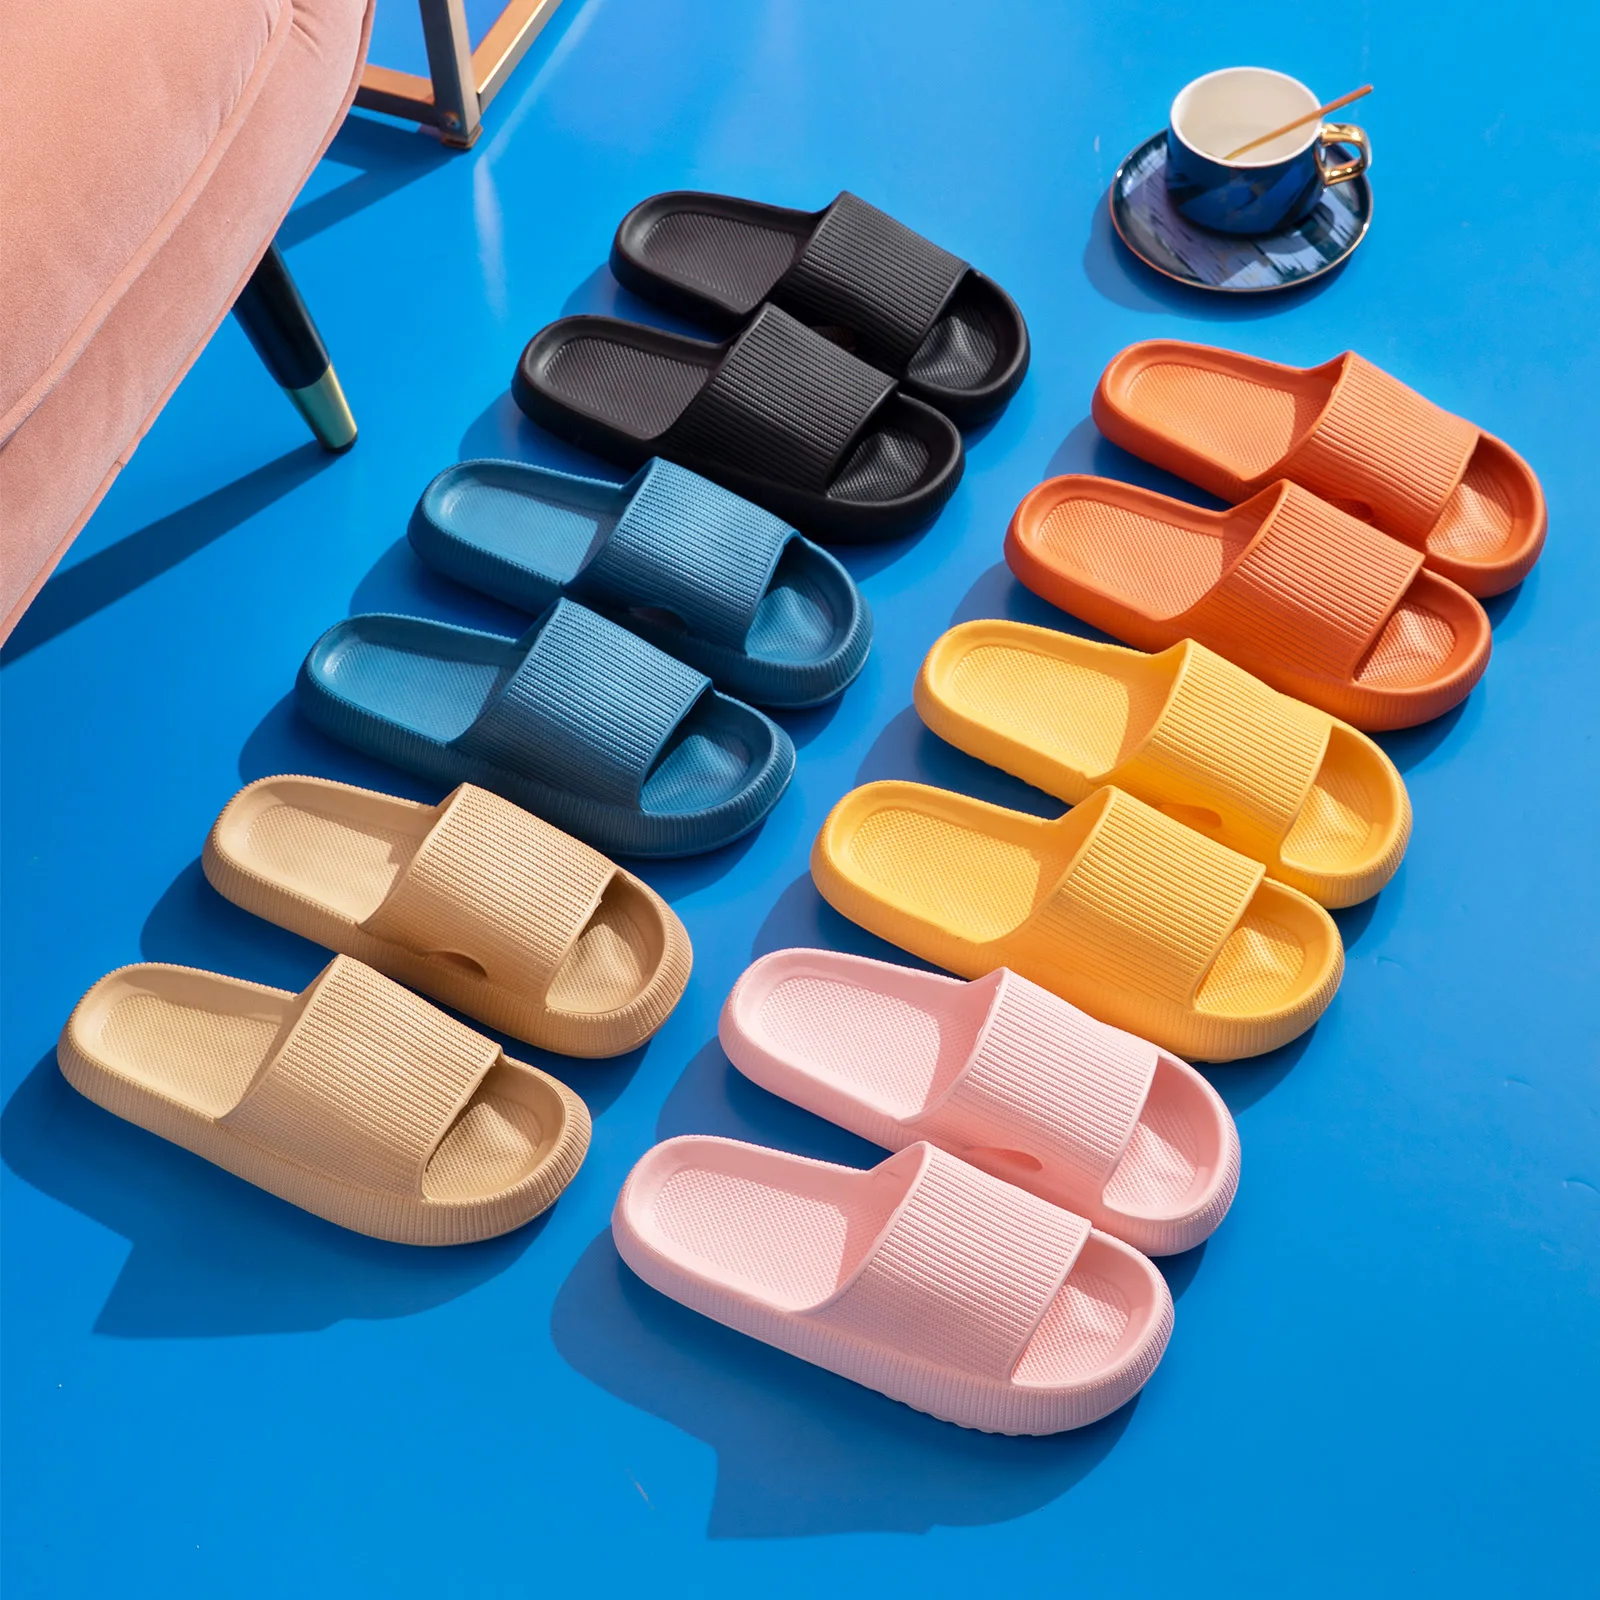 Women Thick Platform Slippers Summer Beach Eva Soft Sole Sandals Leisure Men Indoor Bathroom Anti-slip Zapatillas chaussons 1